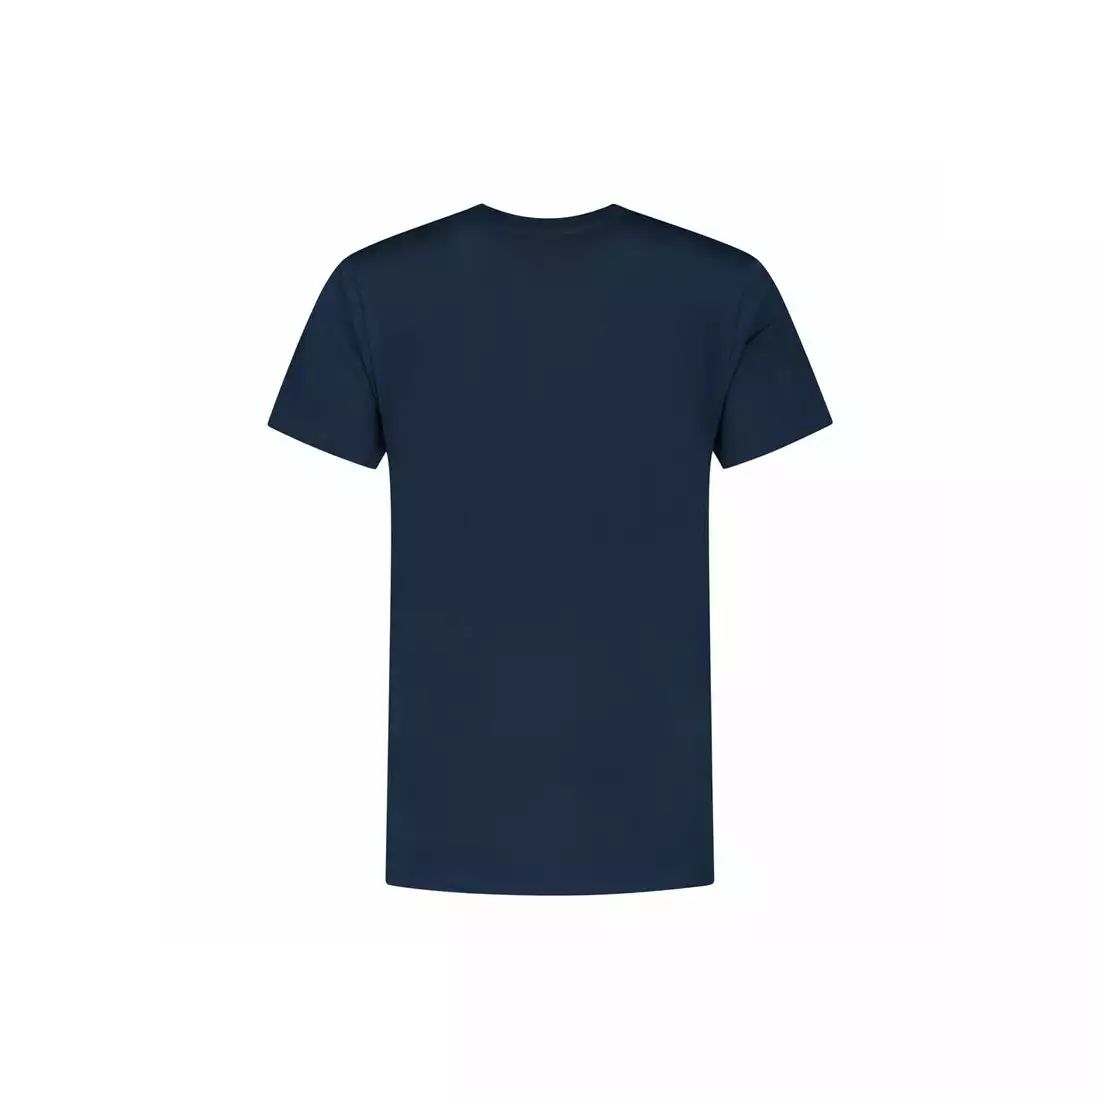 Tricou Rogelli pentru bărbați LOGO bleumarin 160.005